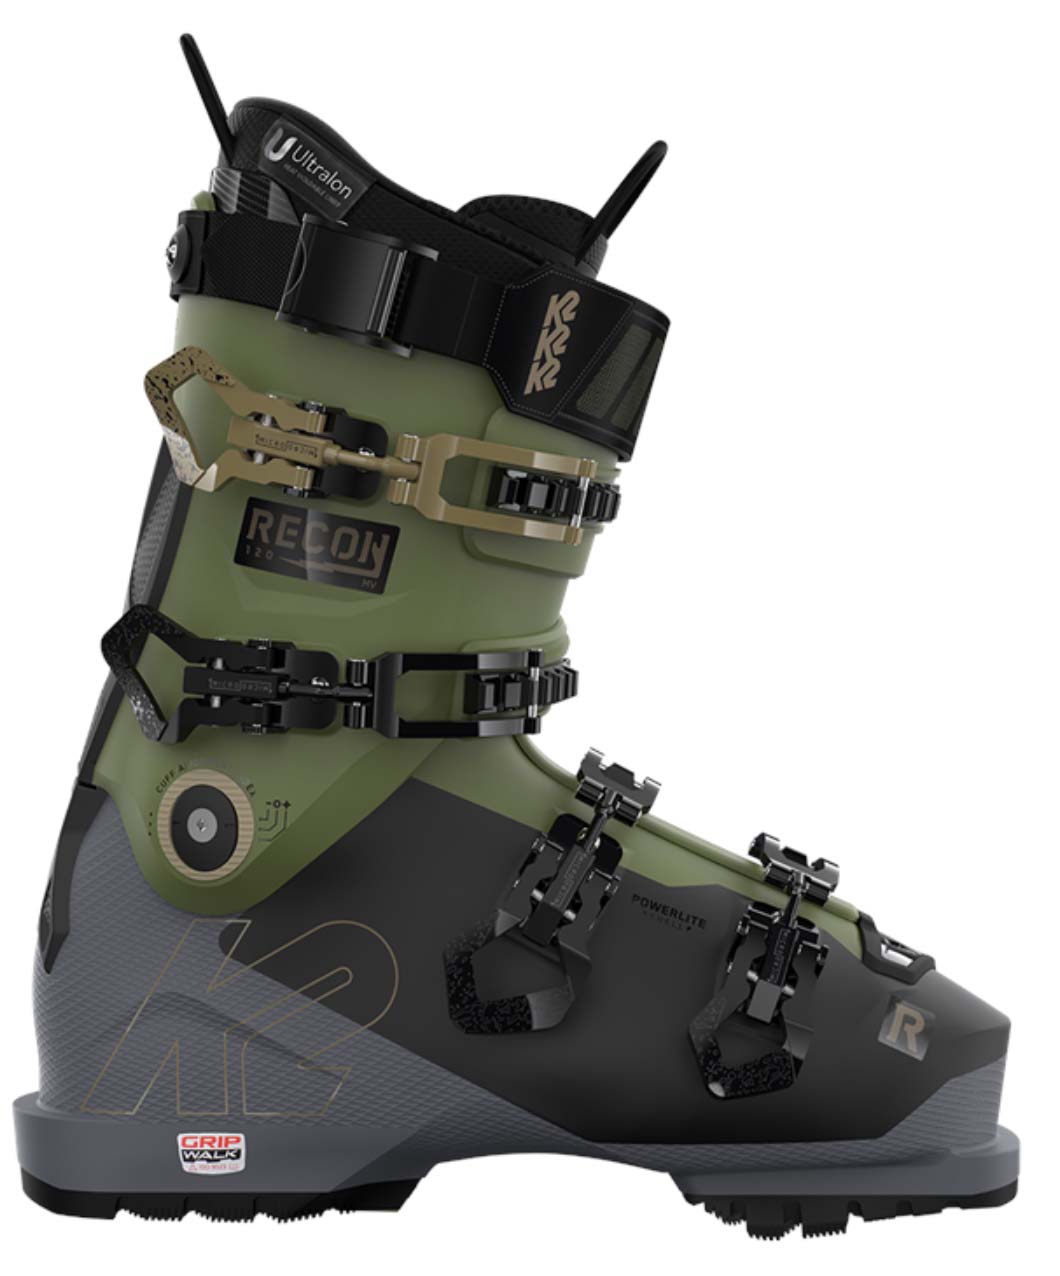 K2 Recon 120 MV ski boots